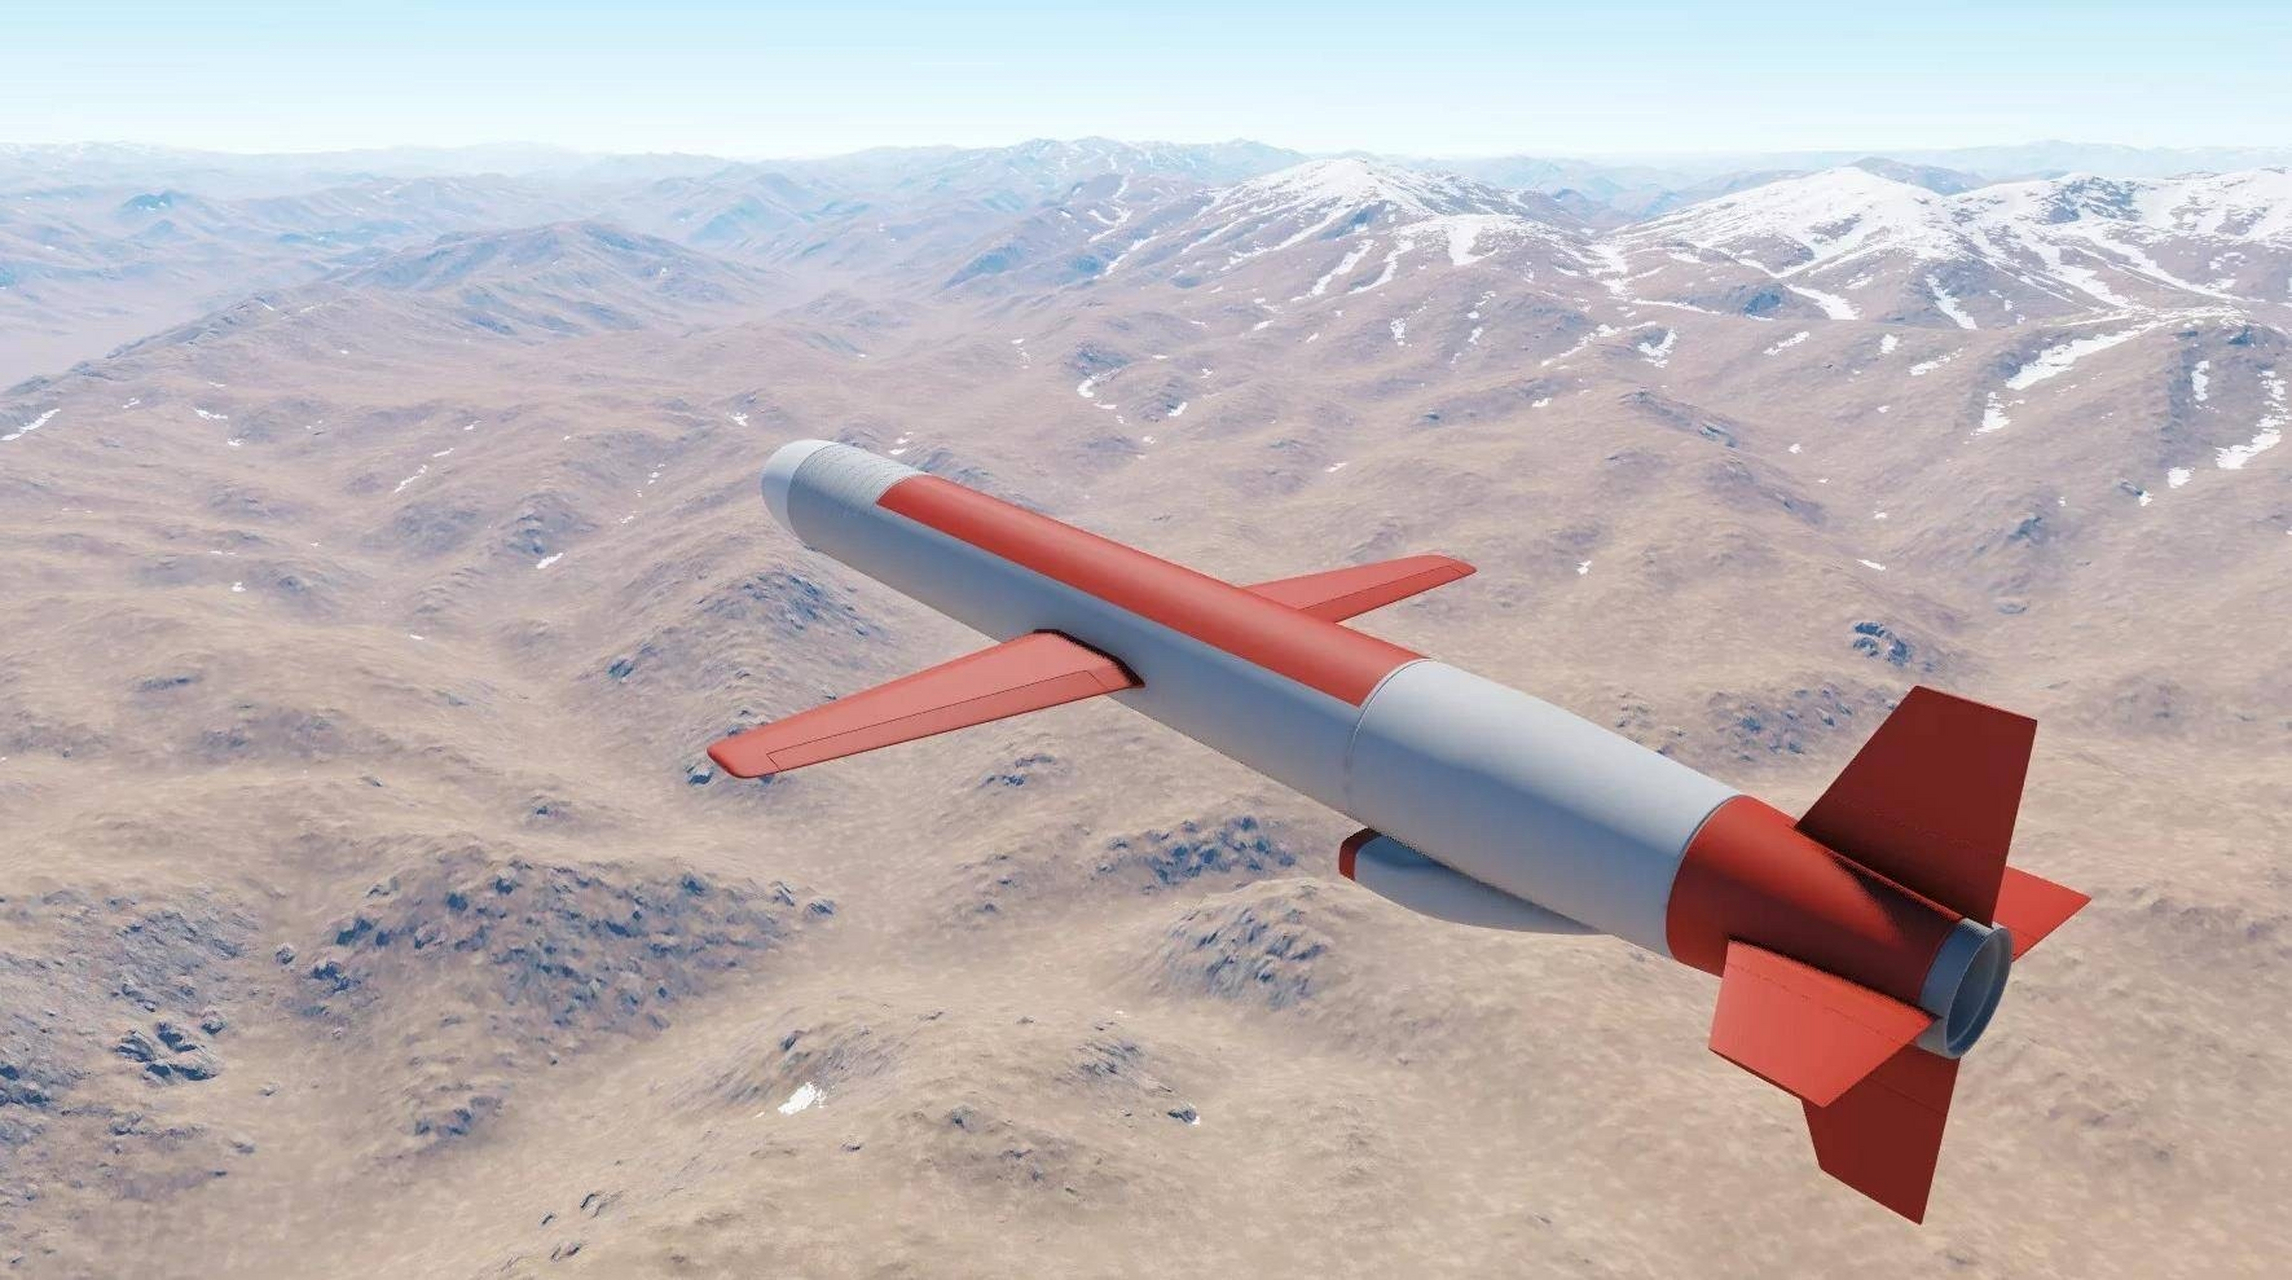 日媒:美国批准向日本出售400枚战斧式巡航导弹,将加剧军备竞赛  战斧